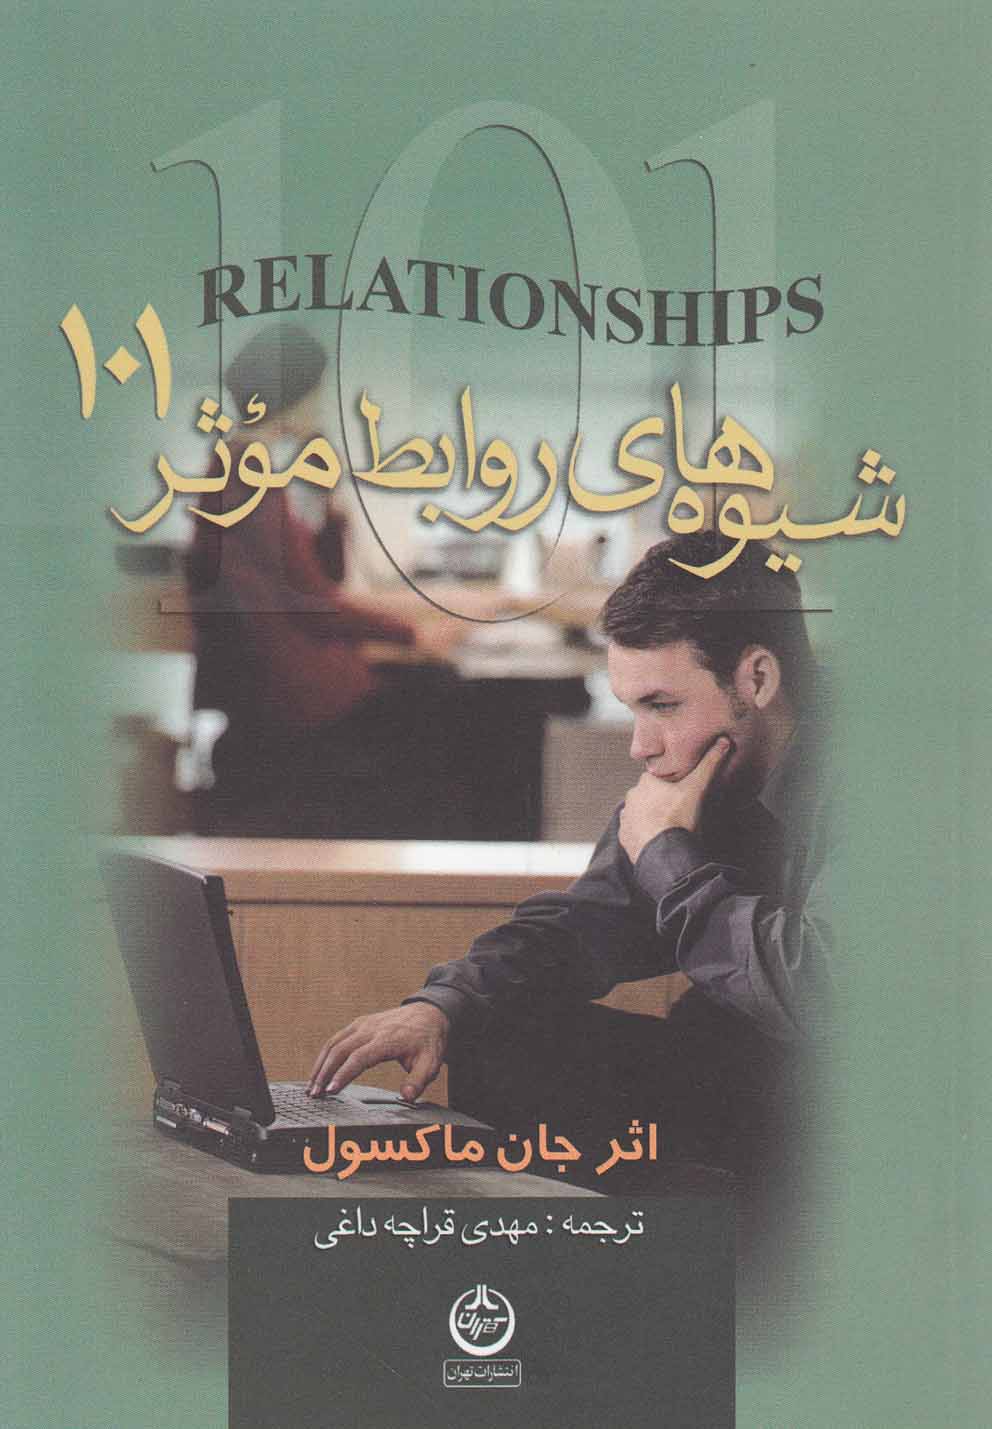 شیوه های روابط موثر 101 (شمیز،جیبی،تهران)